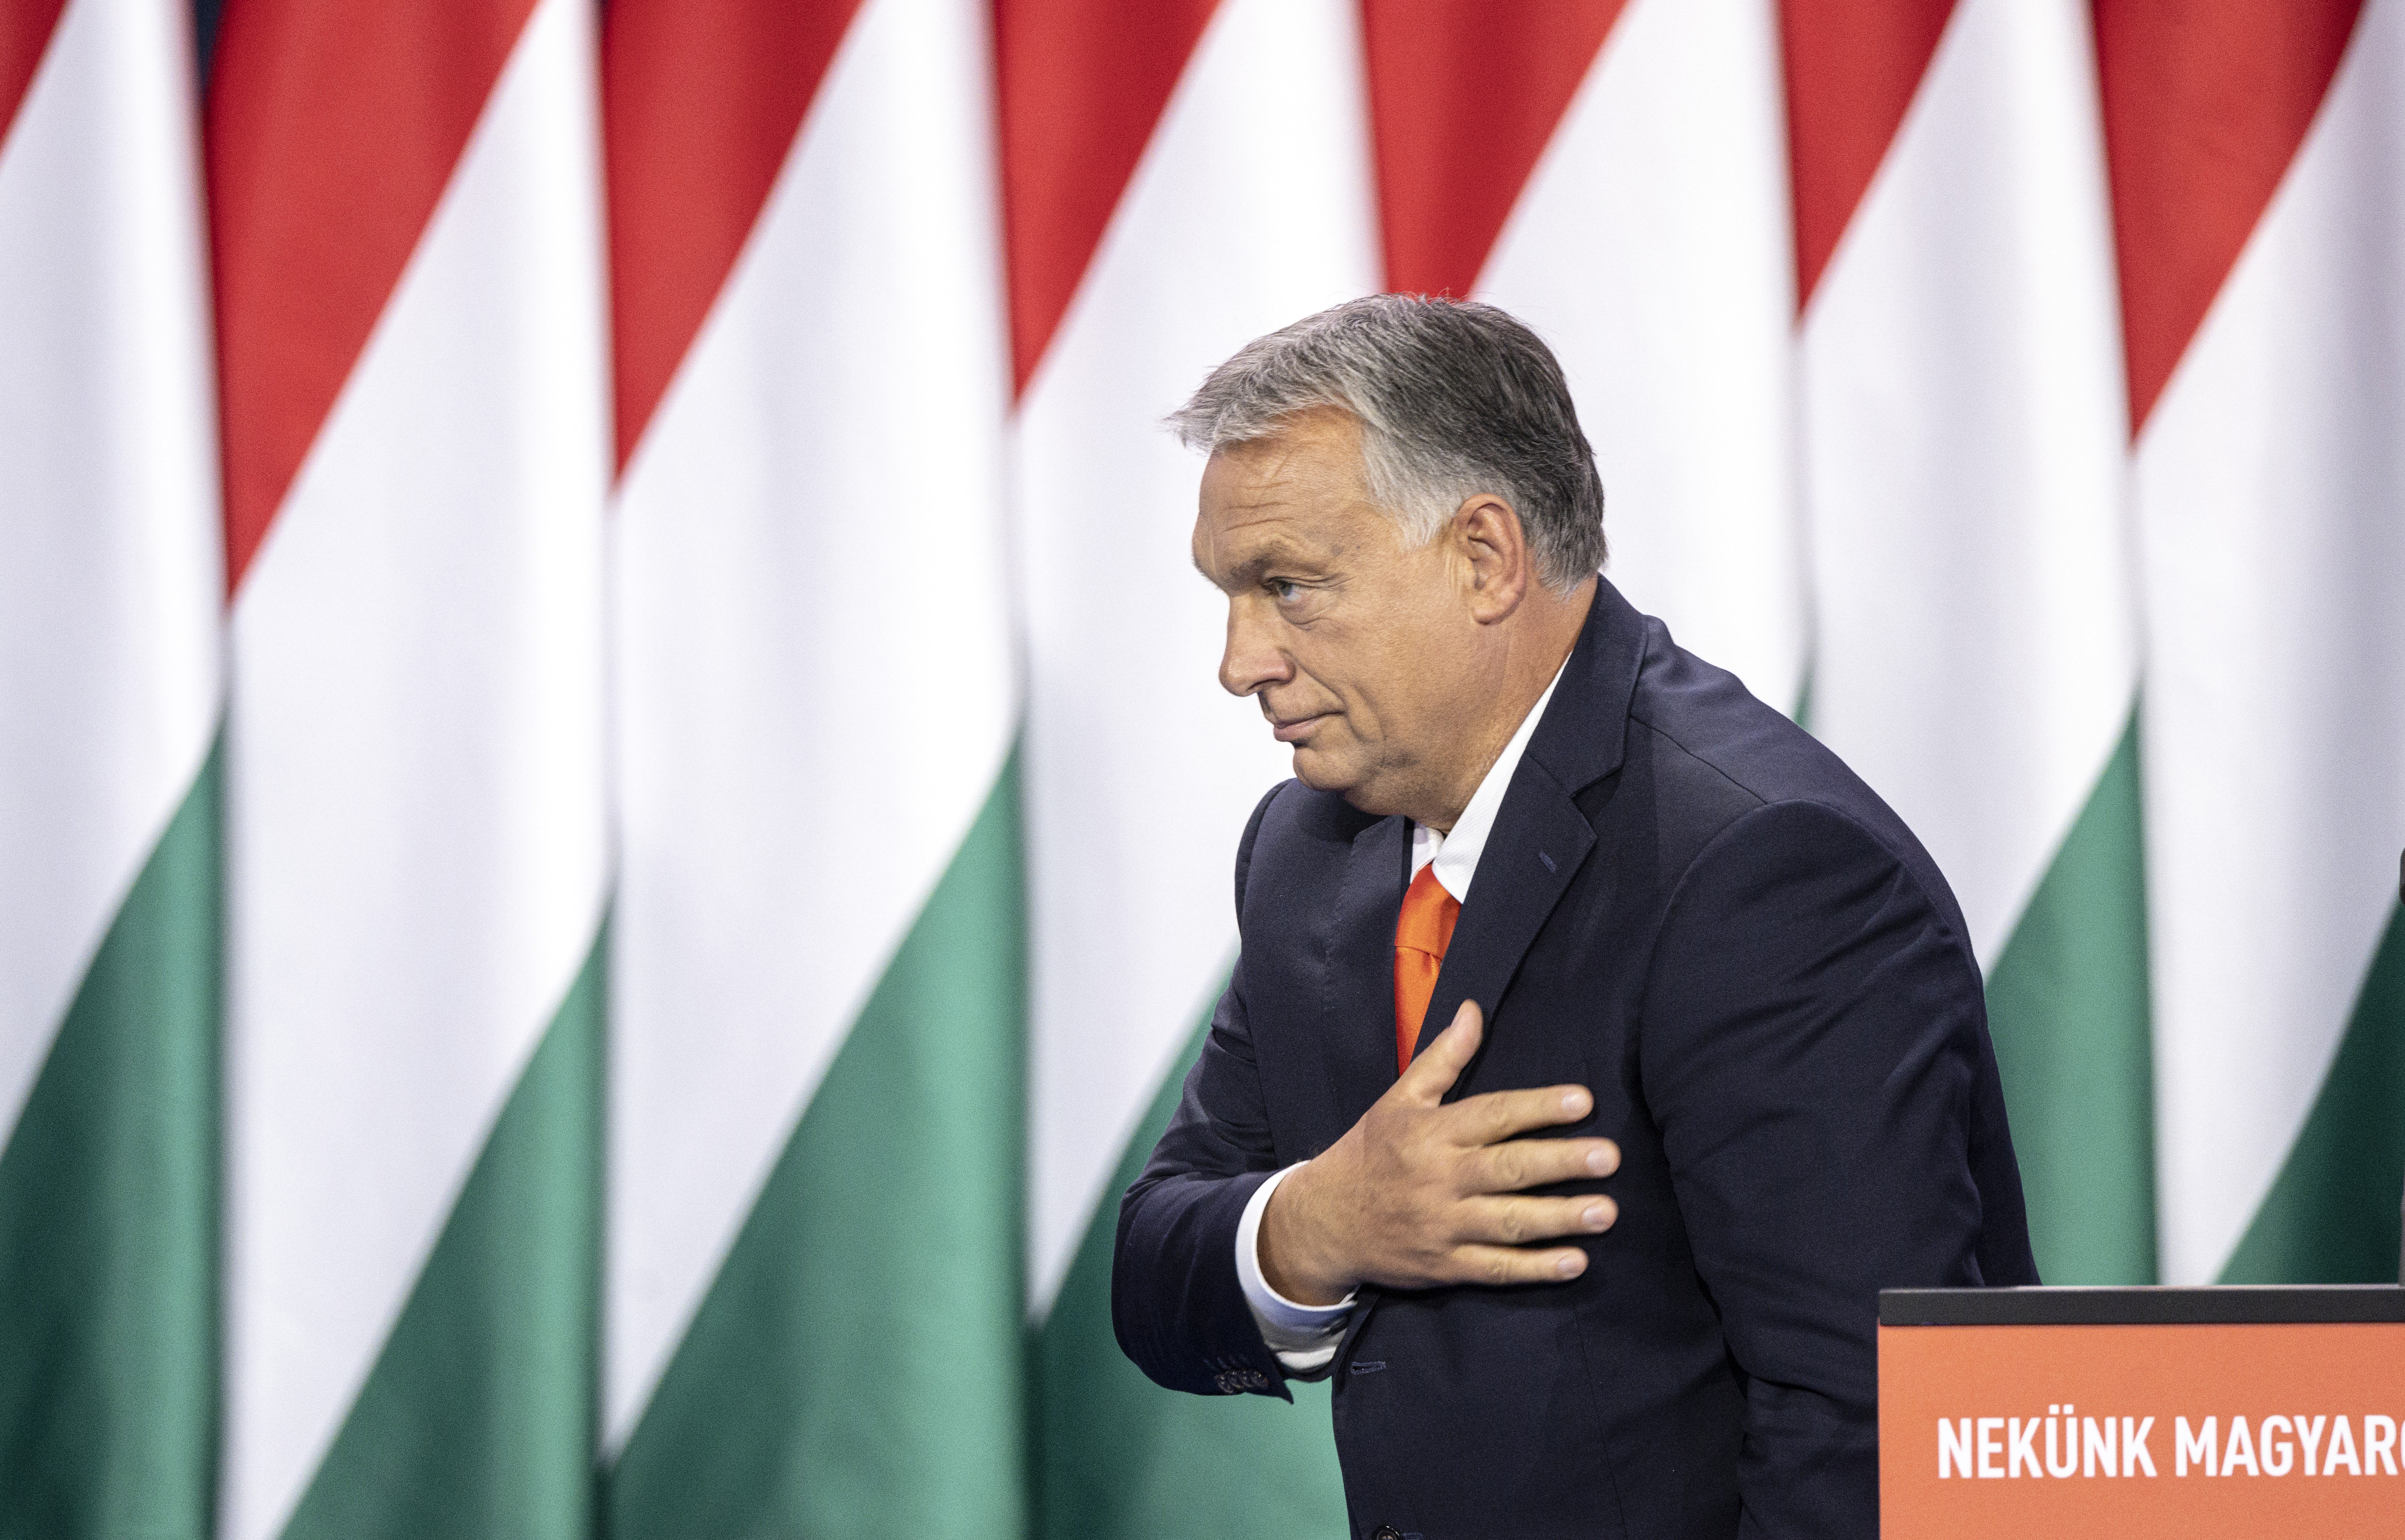 Amivel Orbánnak szembe kell néznie